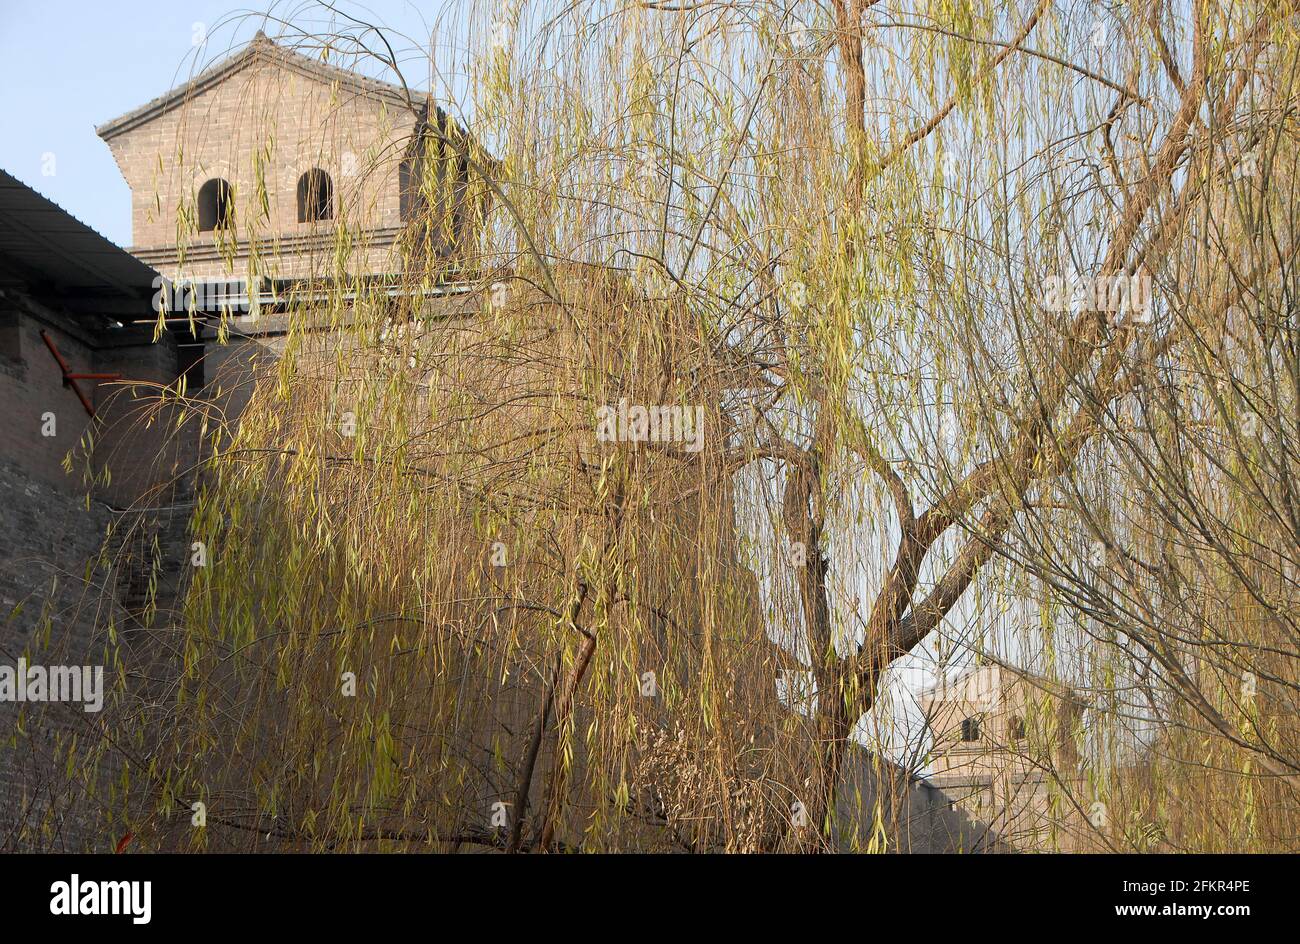 Pingyao dans la province du Shanxi, Chine. Mur de la ville de Pingyao et tours de guet vus à travers des arbres de saule depuis le parc à côté de l'ancien mur. Banque D'Images